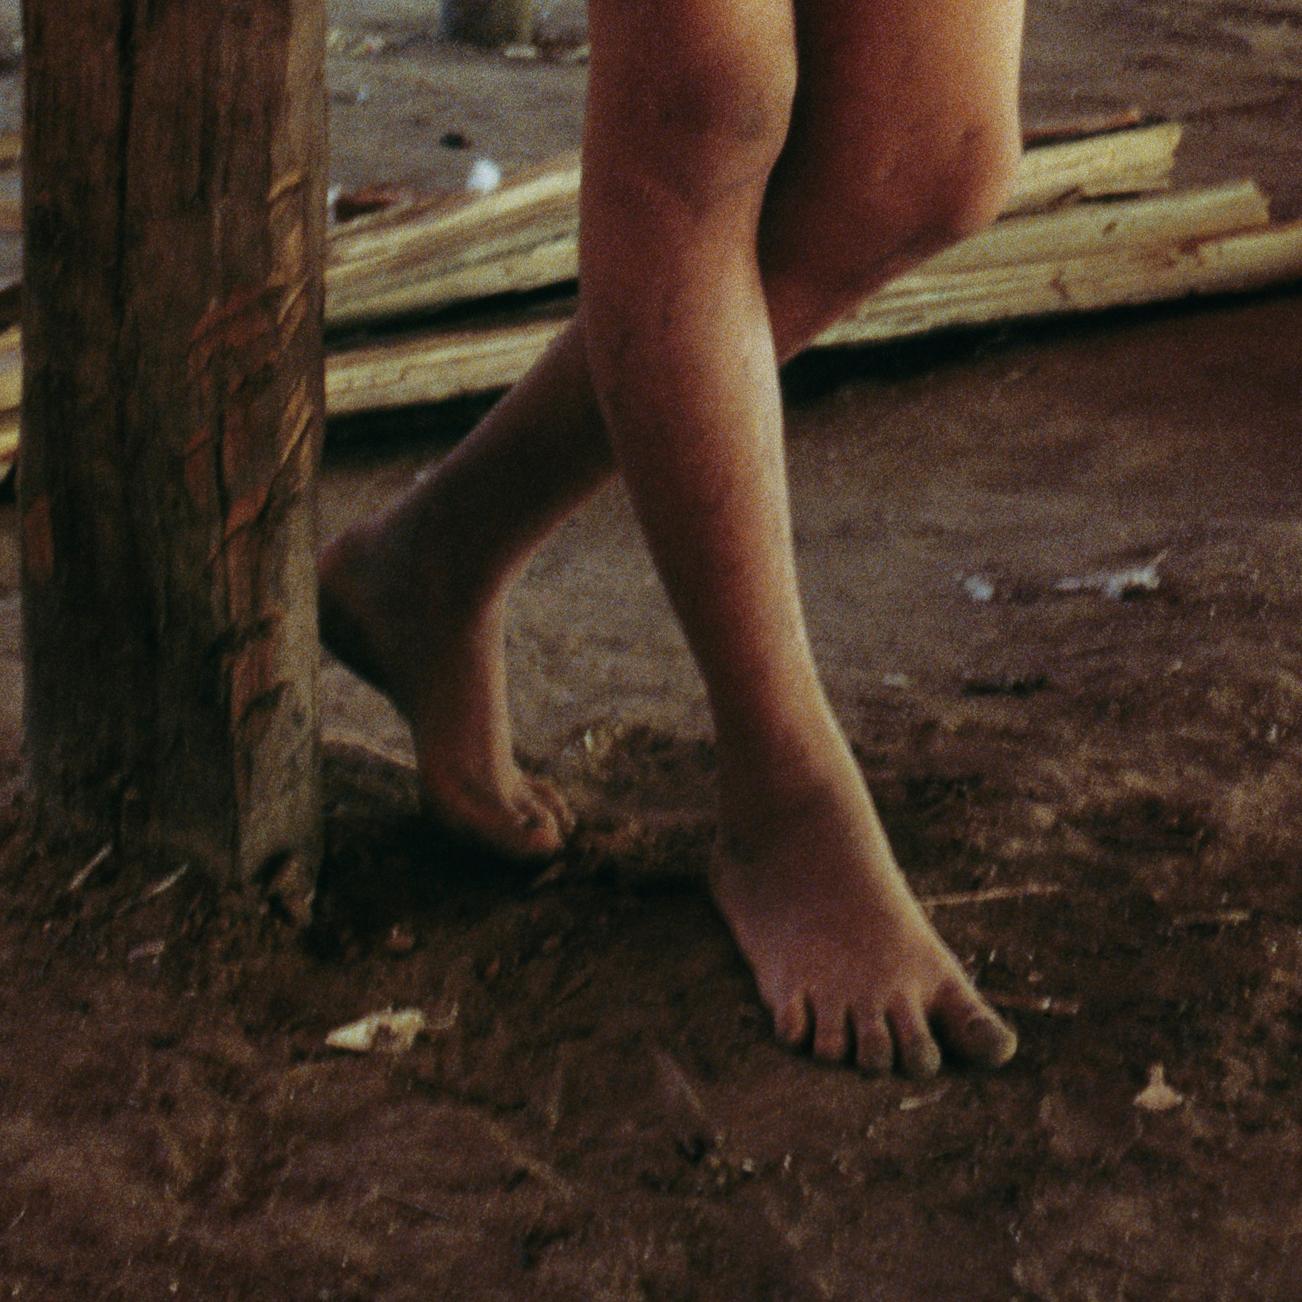 Yanomami, Amazonie, Brésil, janvier 1995

X

Photographié par Jonathan Becker
Contemporain
28